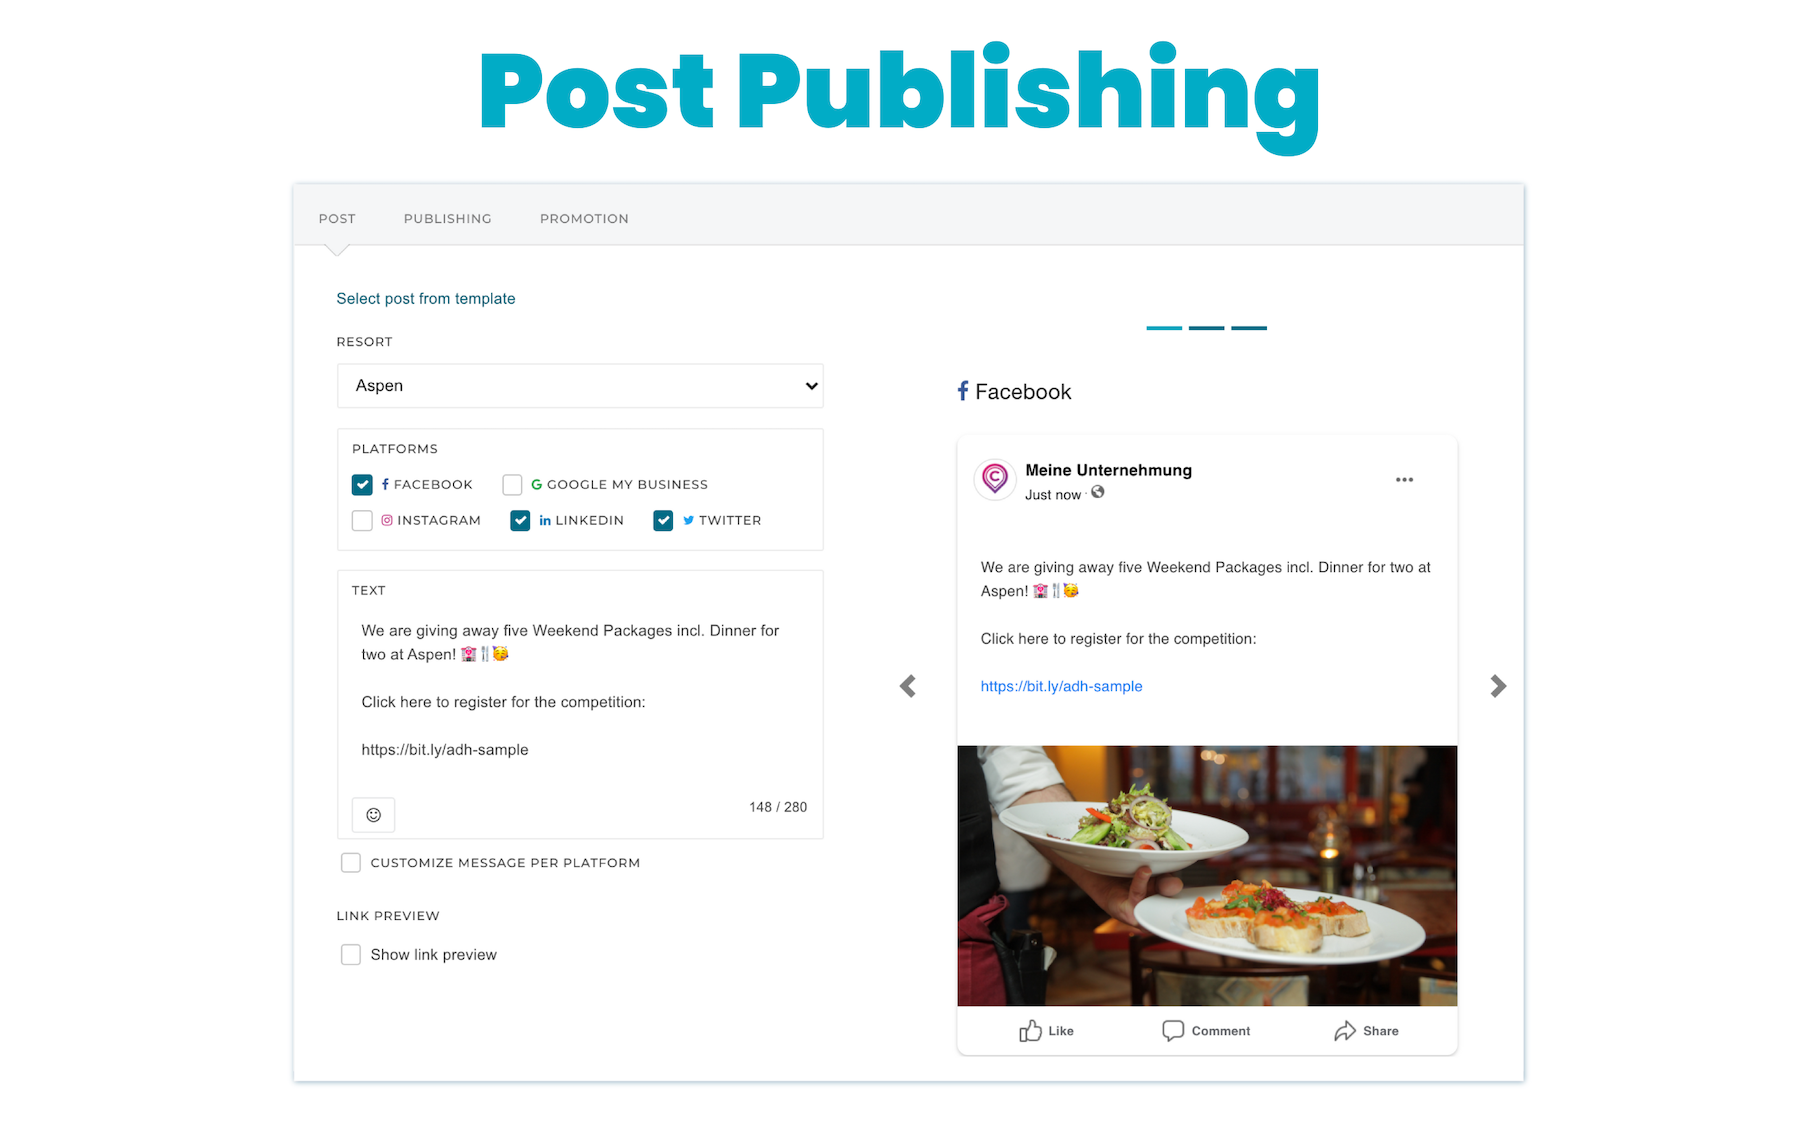 adhook - Post Publishing